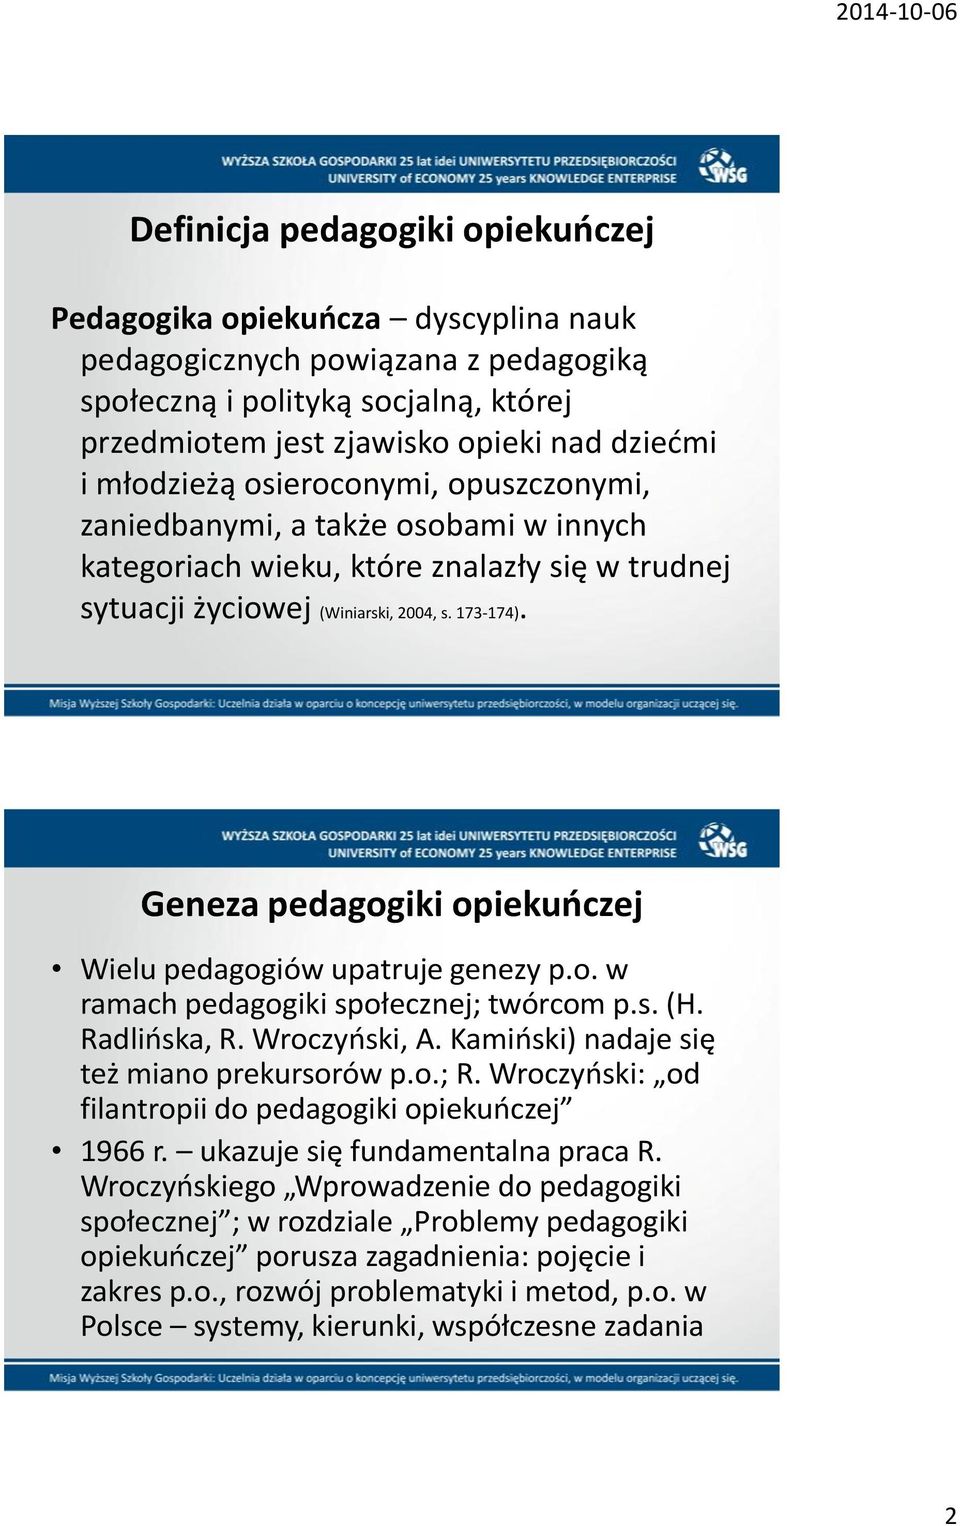 Geneza pedagogiki opiekuoczej Wielu pedagogiów upatruje genezy p.o. w ramach pedagogiki społecznej; twórcom p.s. (H. Radlioska, R. Wroczyoski, A. Kamioski) nadaje się też miano prekursorów p.o.; R.